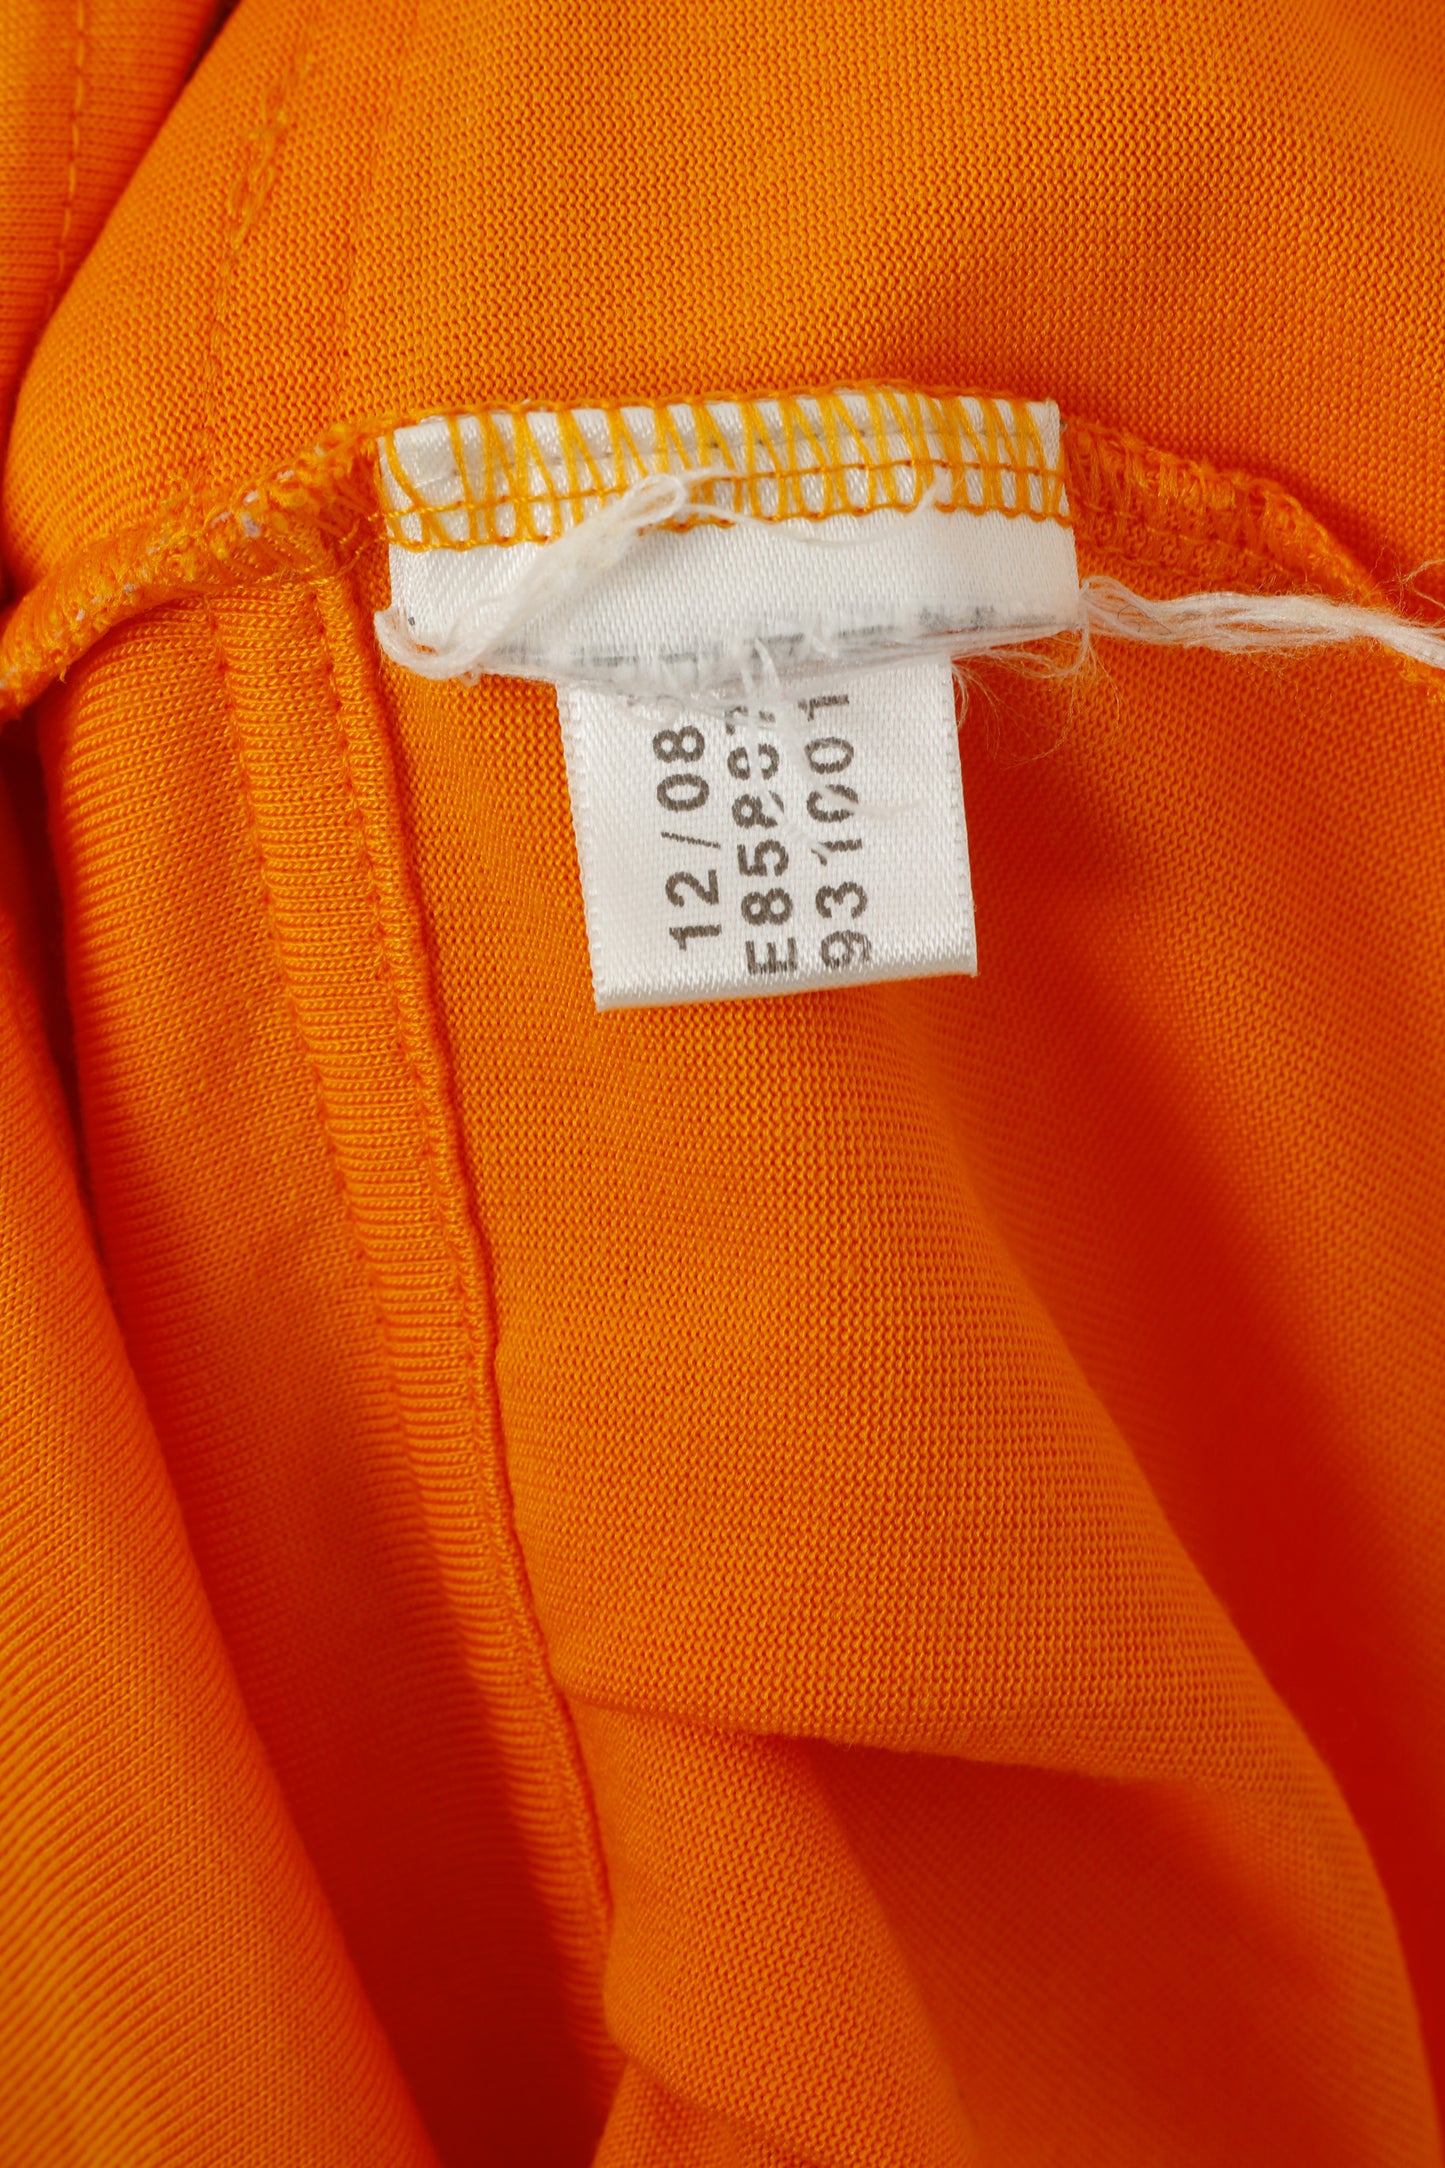 Adidas Stella McCartney Women 38 S Shirt Orange Cotton Sport Gym Vest Top